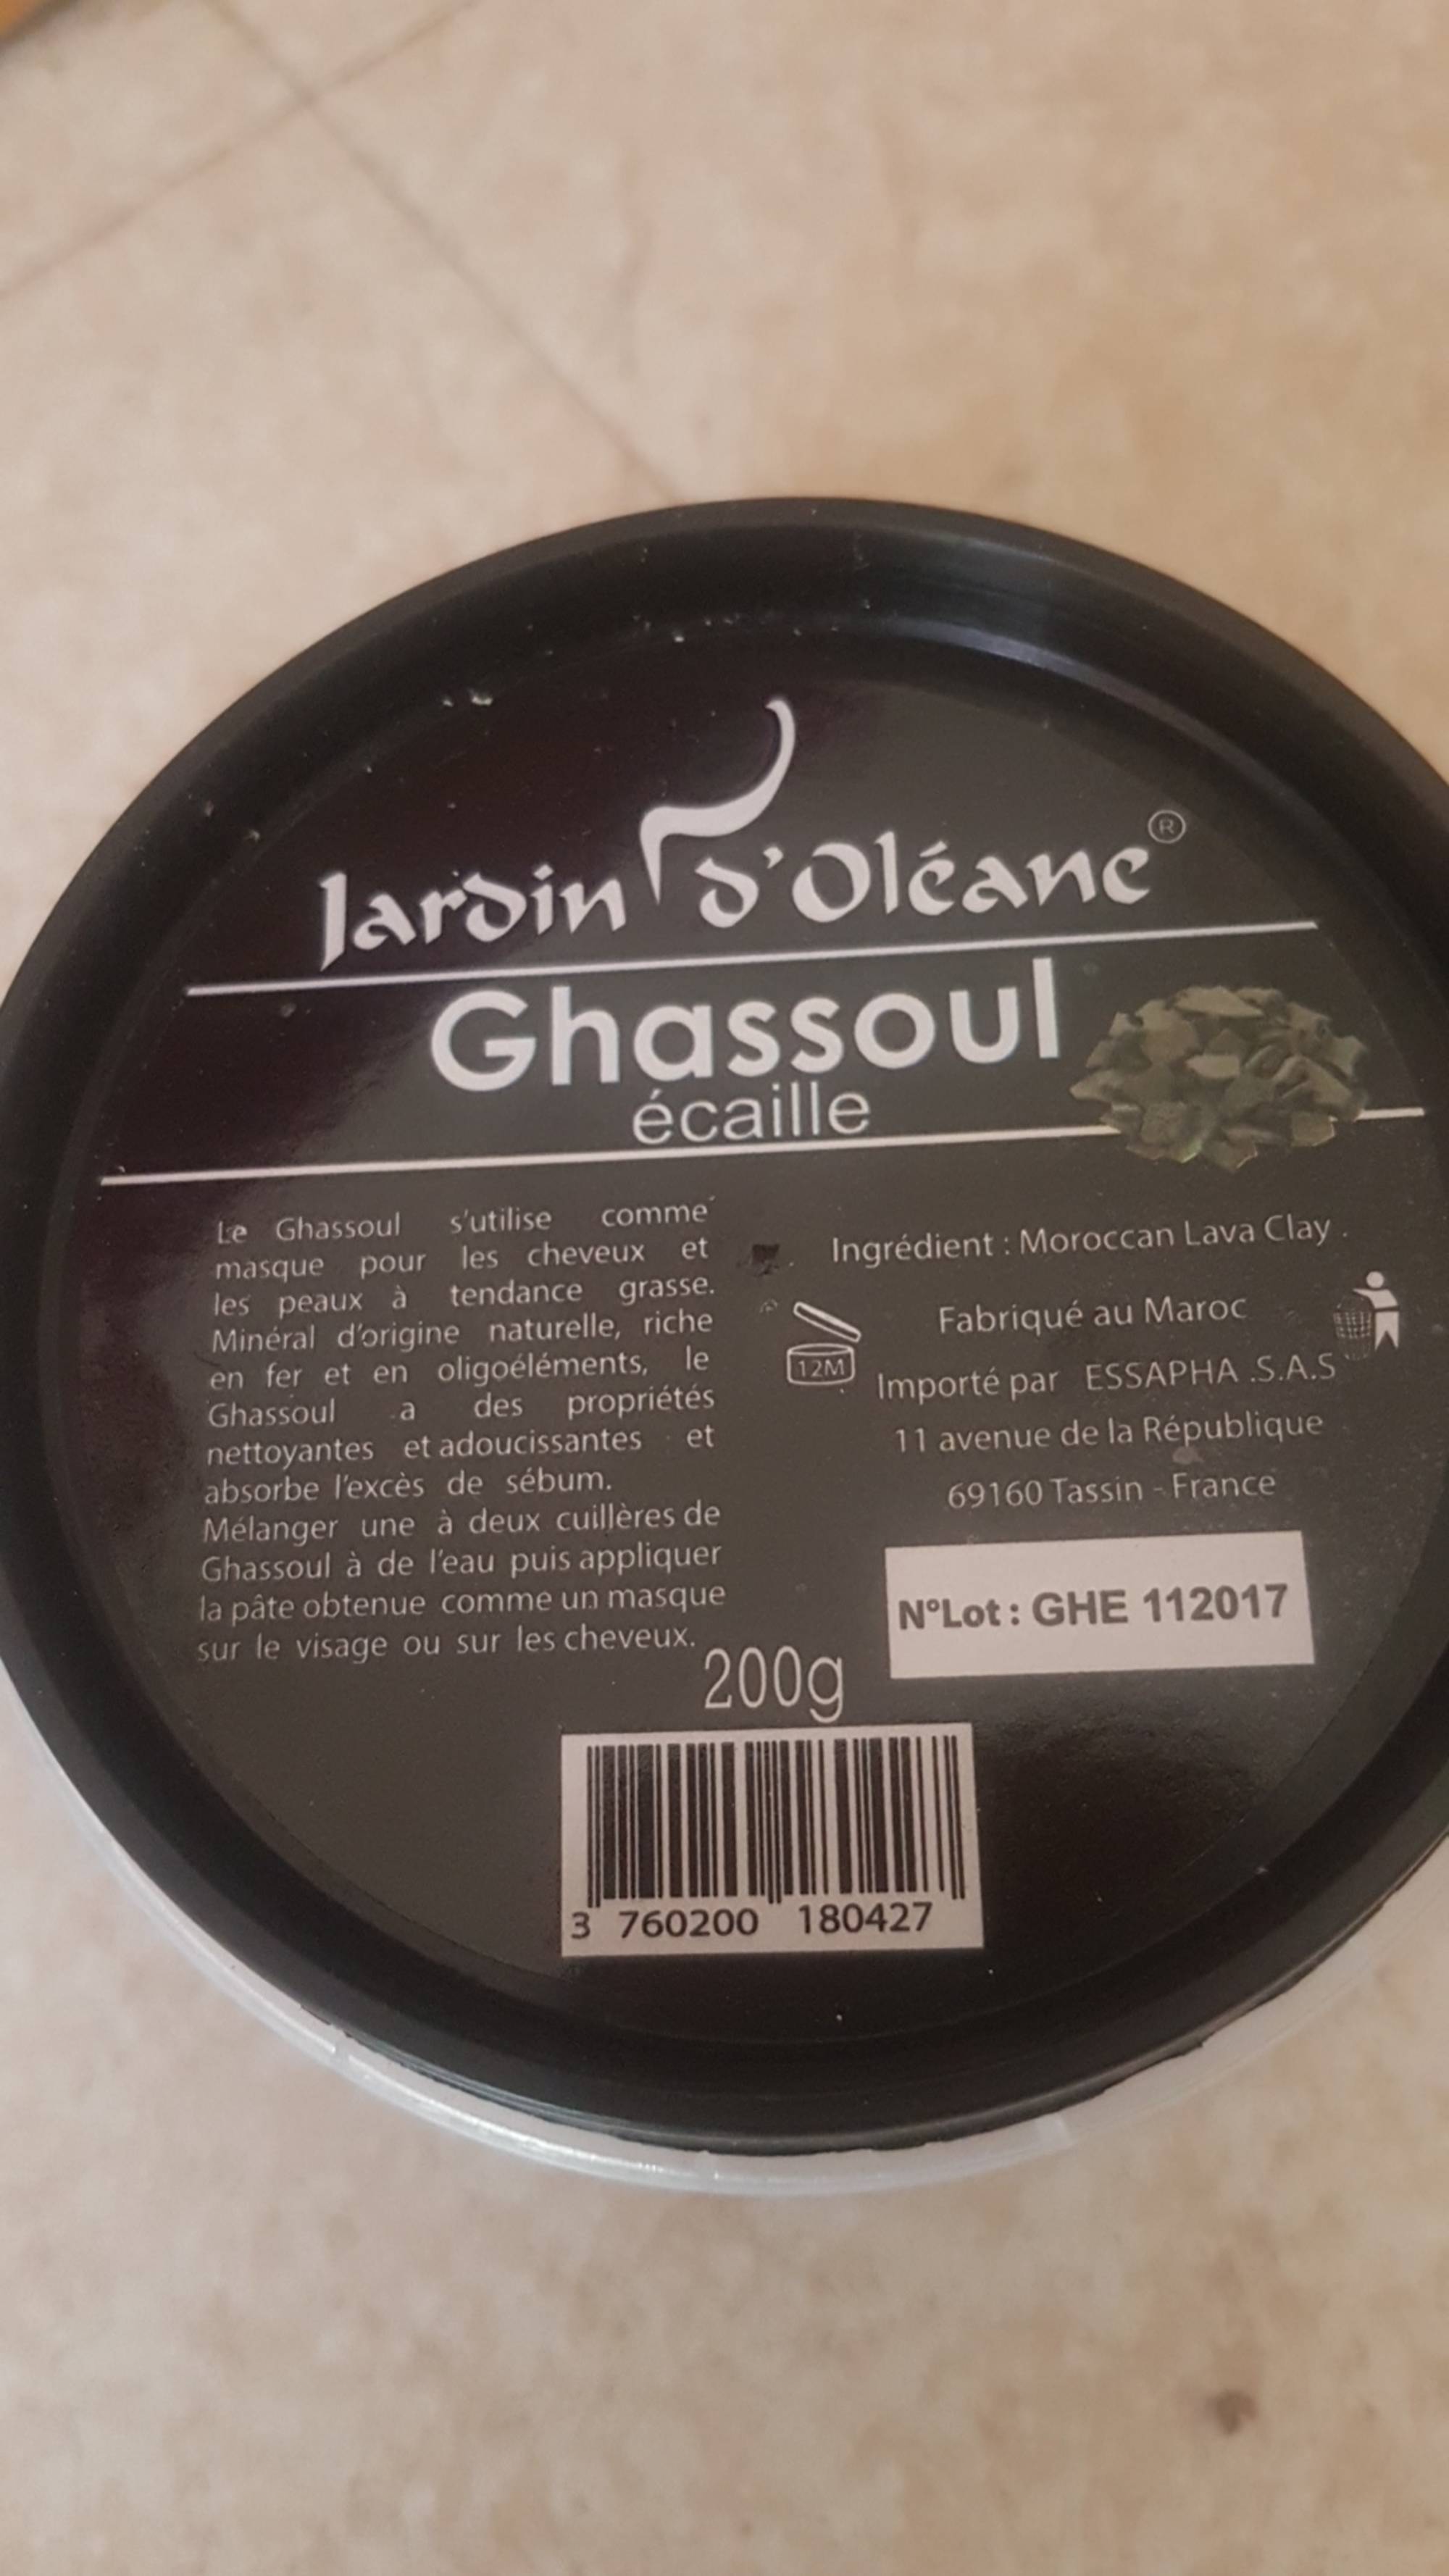 JARDIN D'OLÉANE - Ghassoul écaille - Masque pour les cheveux et les peaux